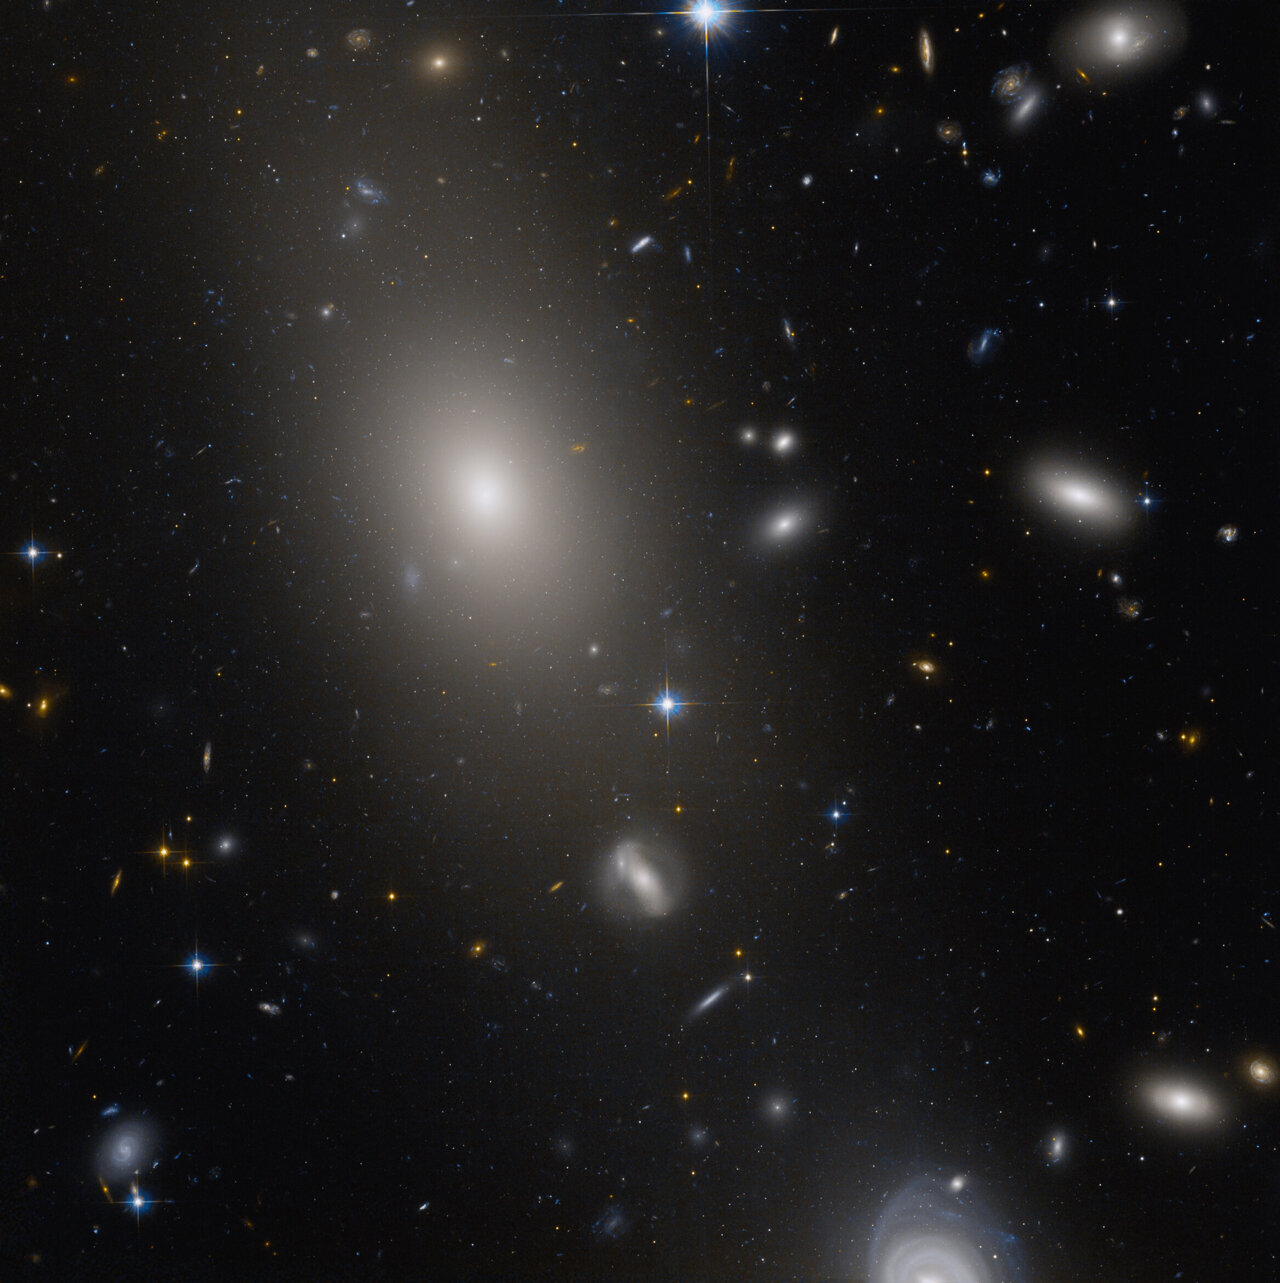 Image: Giant elliptical galaxy UGC 10143